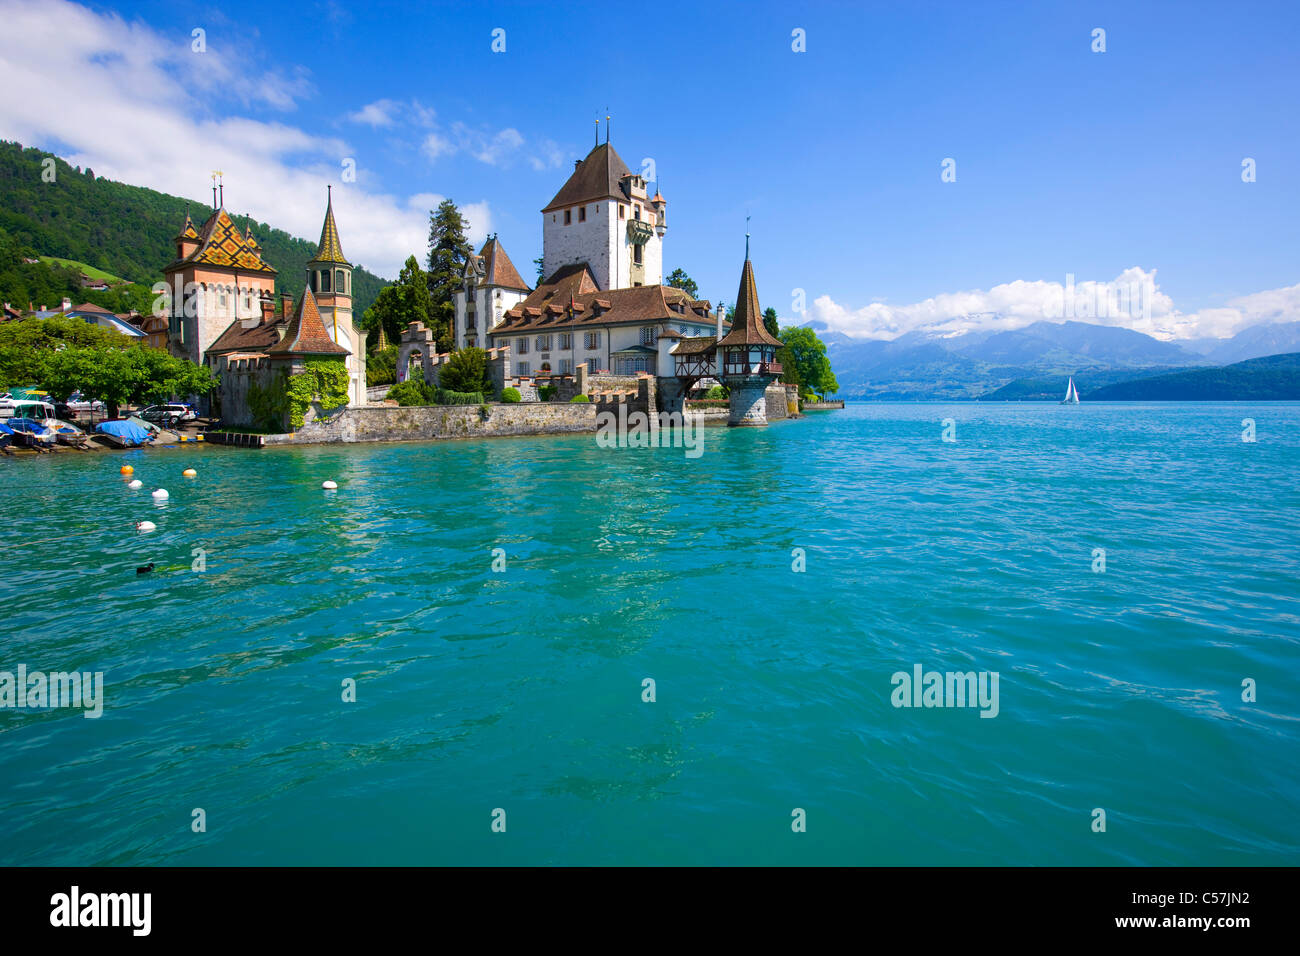 Oberhofen, Suisse, Europe, le canton de Berne, lac, mer, lac de Thoune, château, nuages, verrouillage Banque D'Images